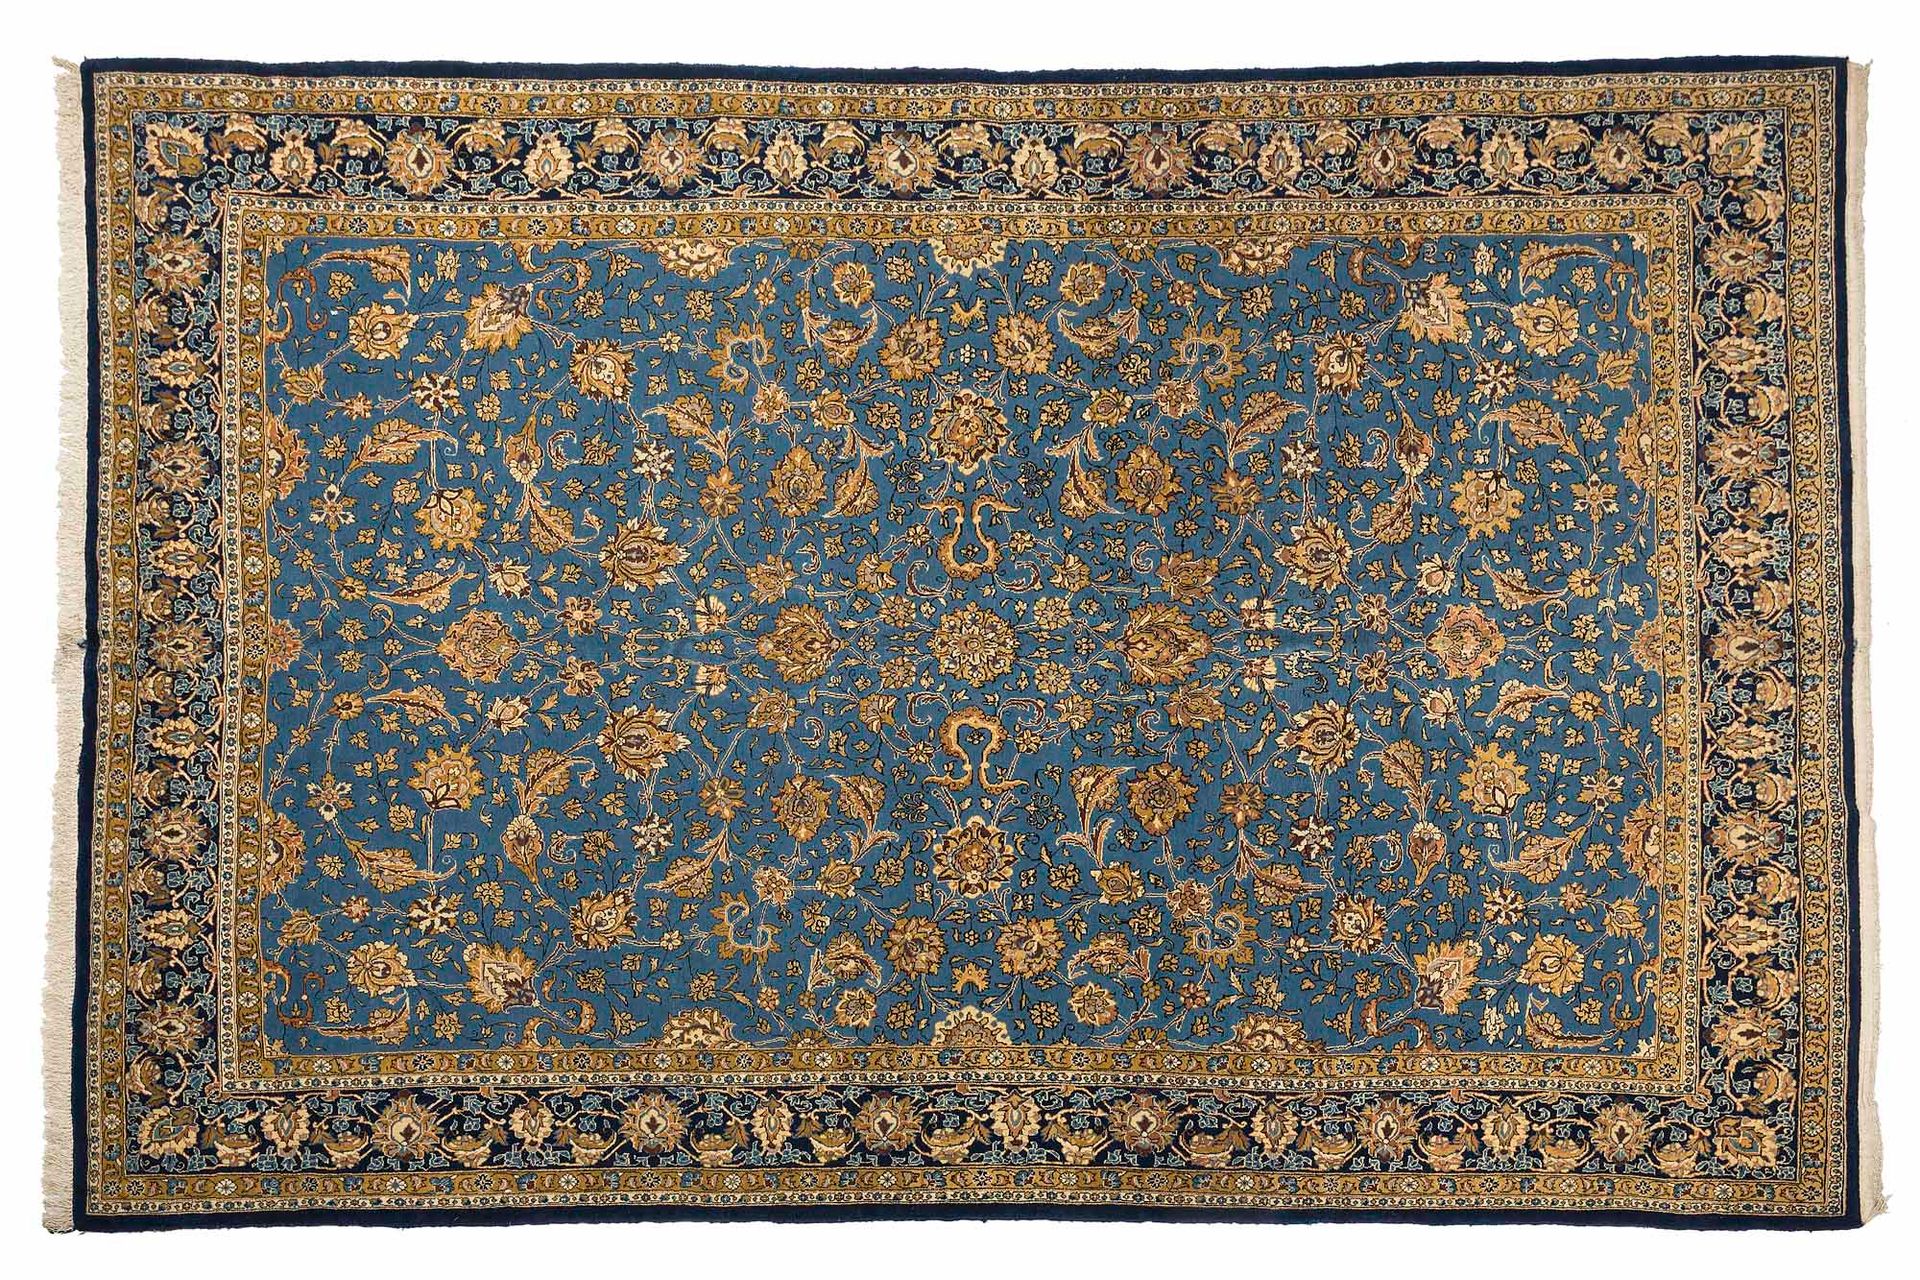 Null 丝绸镶嵌的GHOUM地毯（伊朗），20世纪中期，伊朗国王时代。

尺寸：370 x 254厘米。

技术特点 : 羊毛和丝绒在棉的基础上。

天蓝色的&hellip;